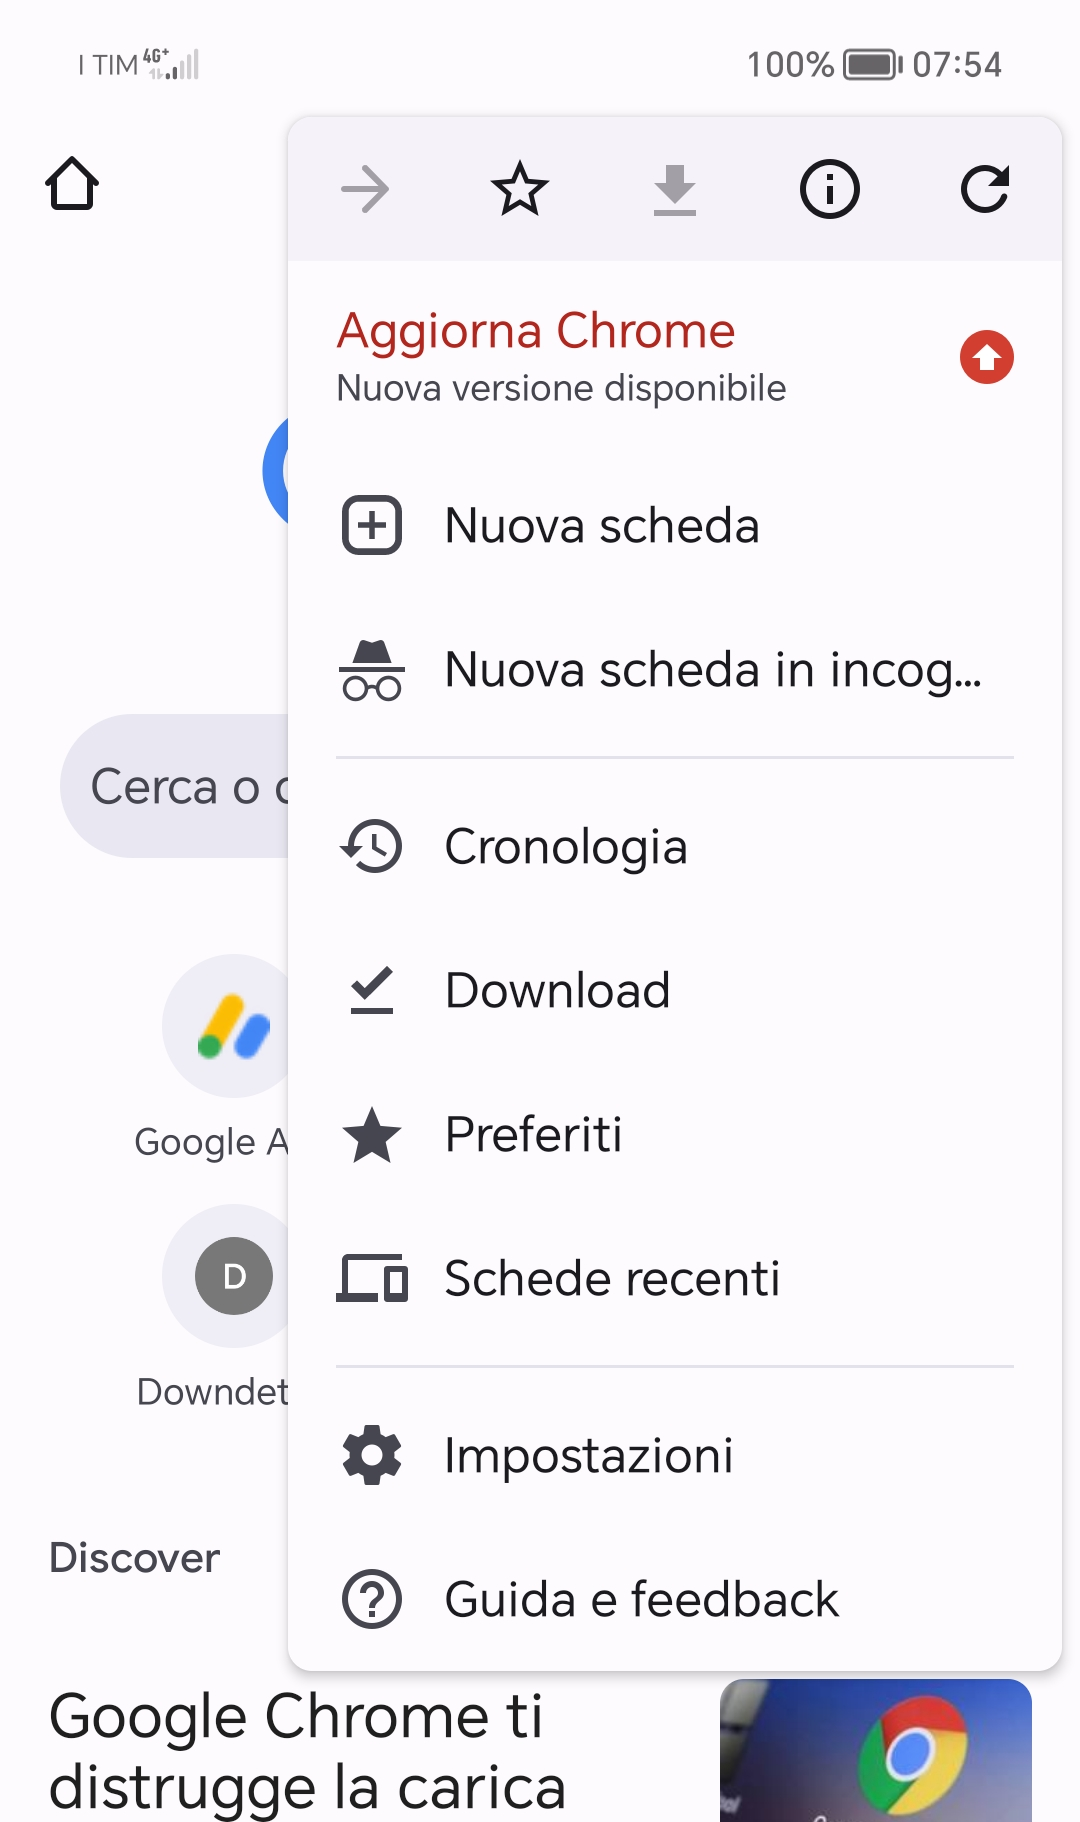 Aggiorna Chrome, nuova versione disponibile ma è Bug (su Android)